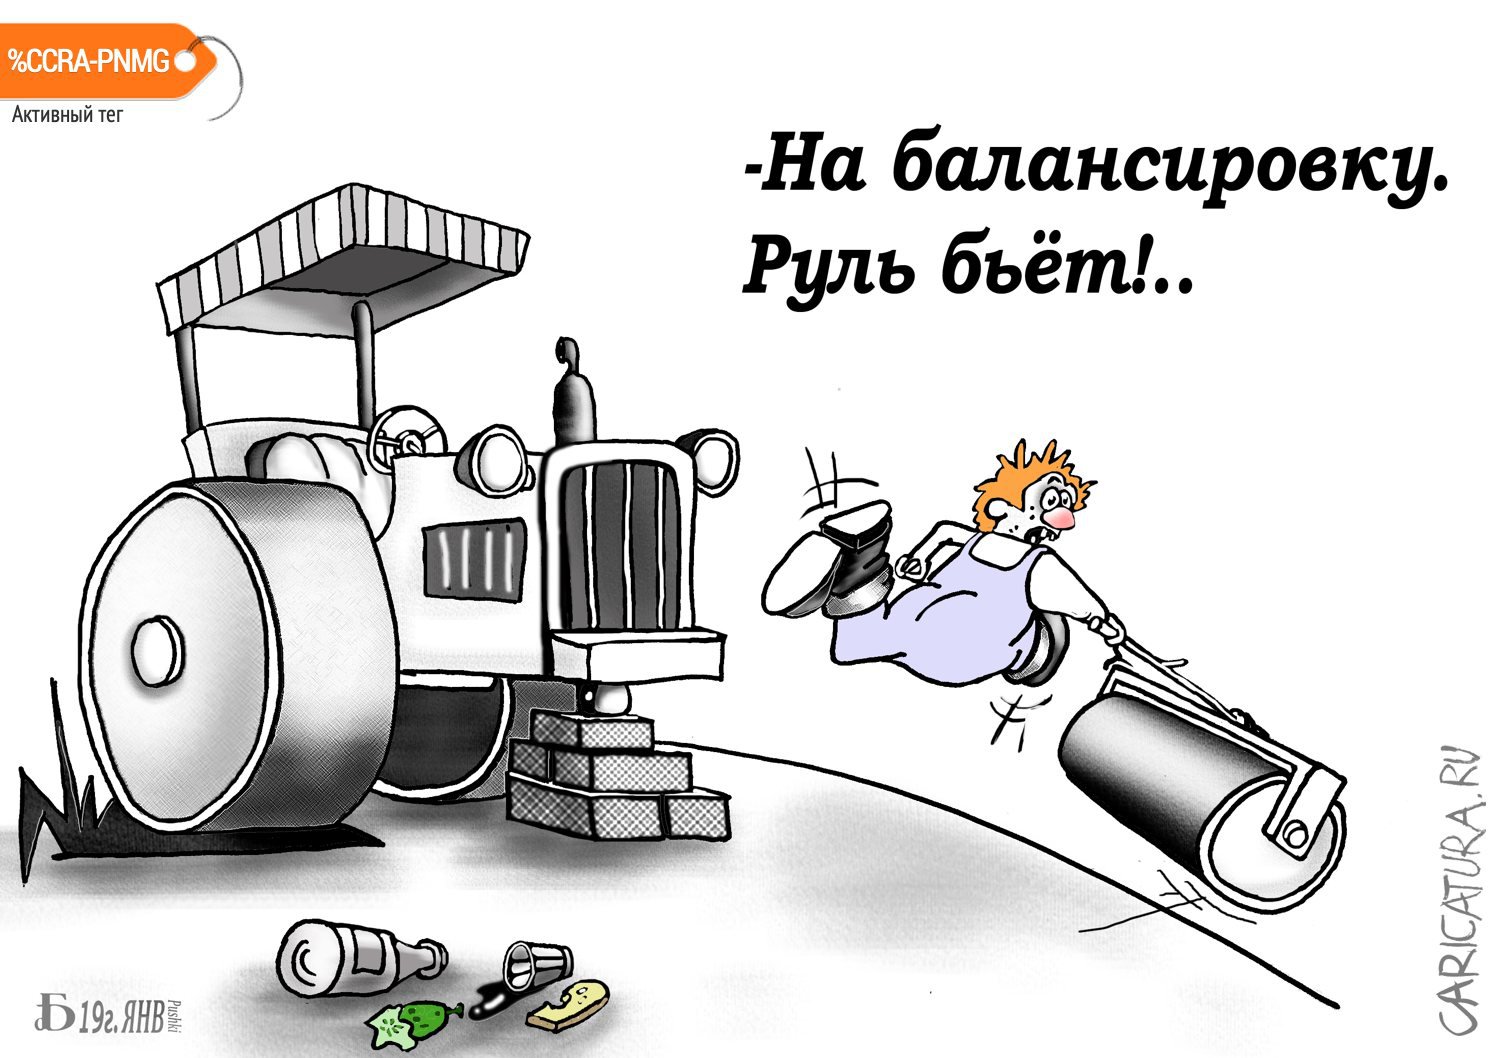 Карикатура "Про техническую неисправность", Борис Демин